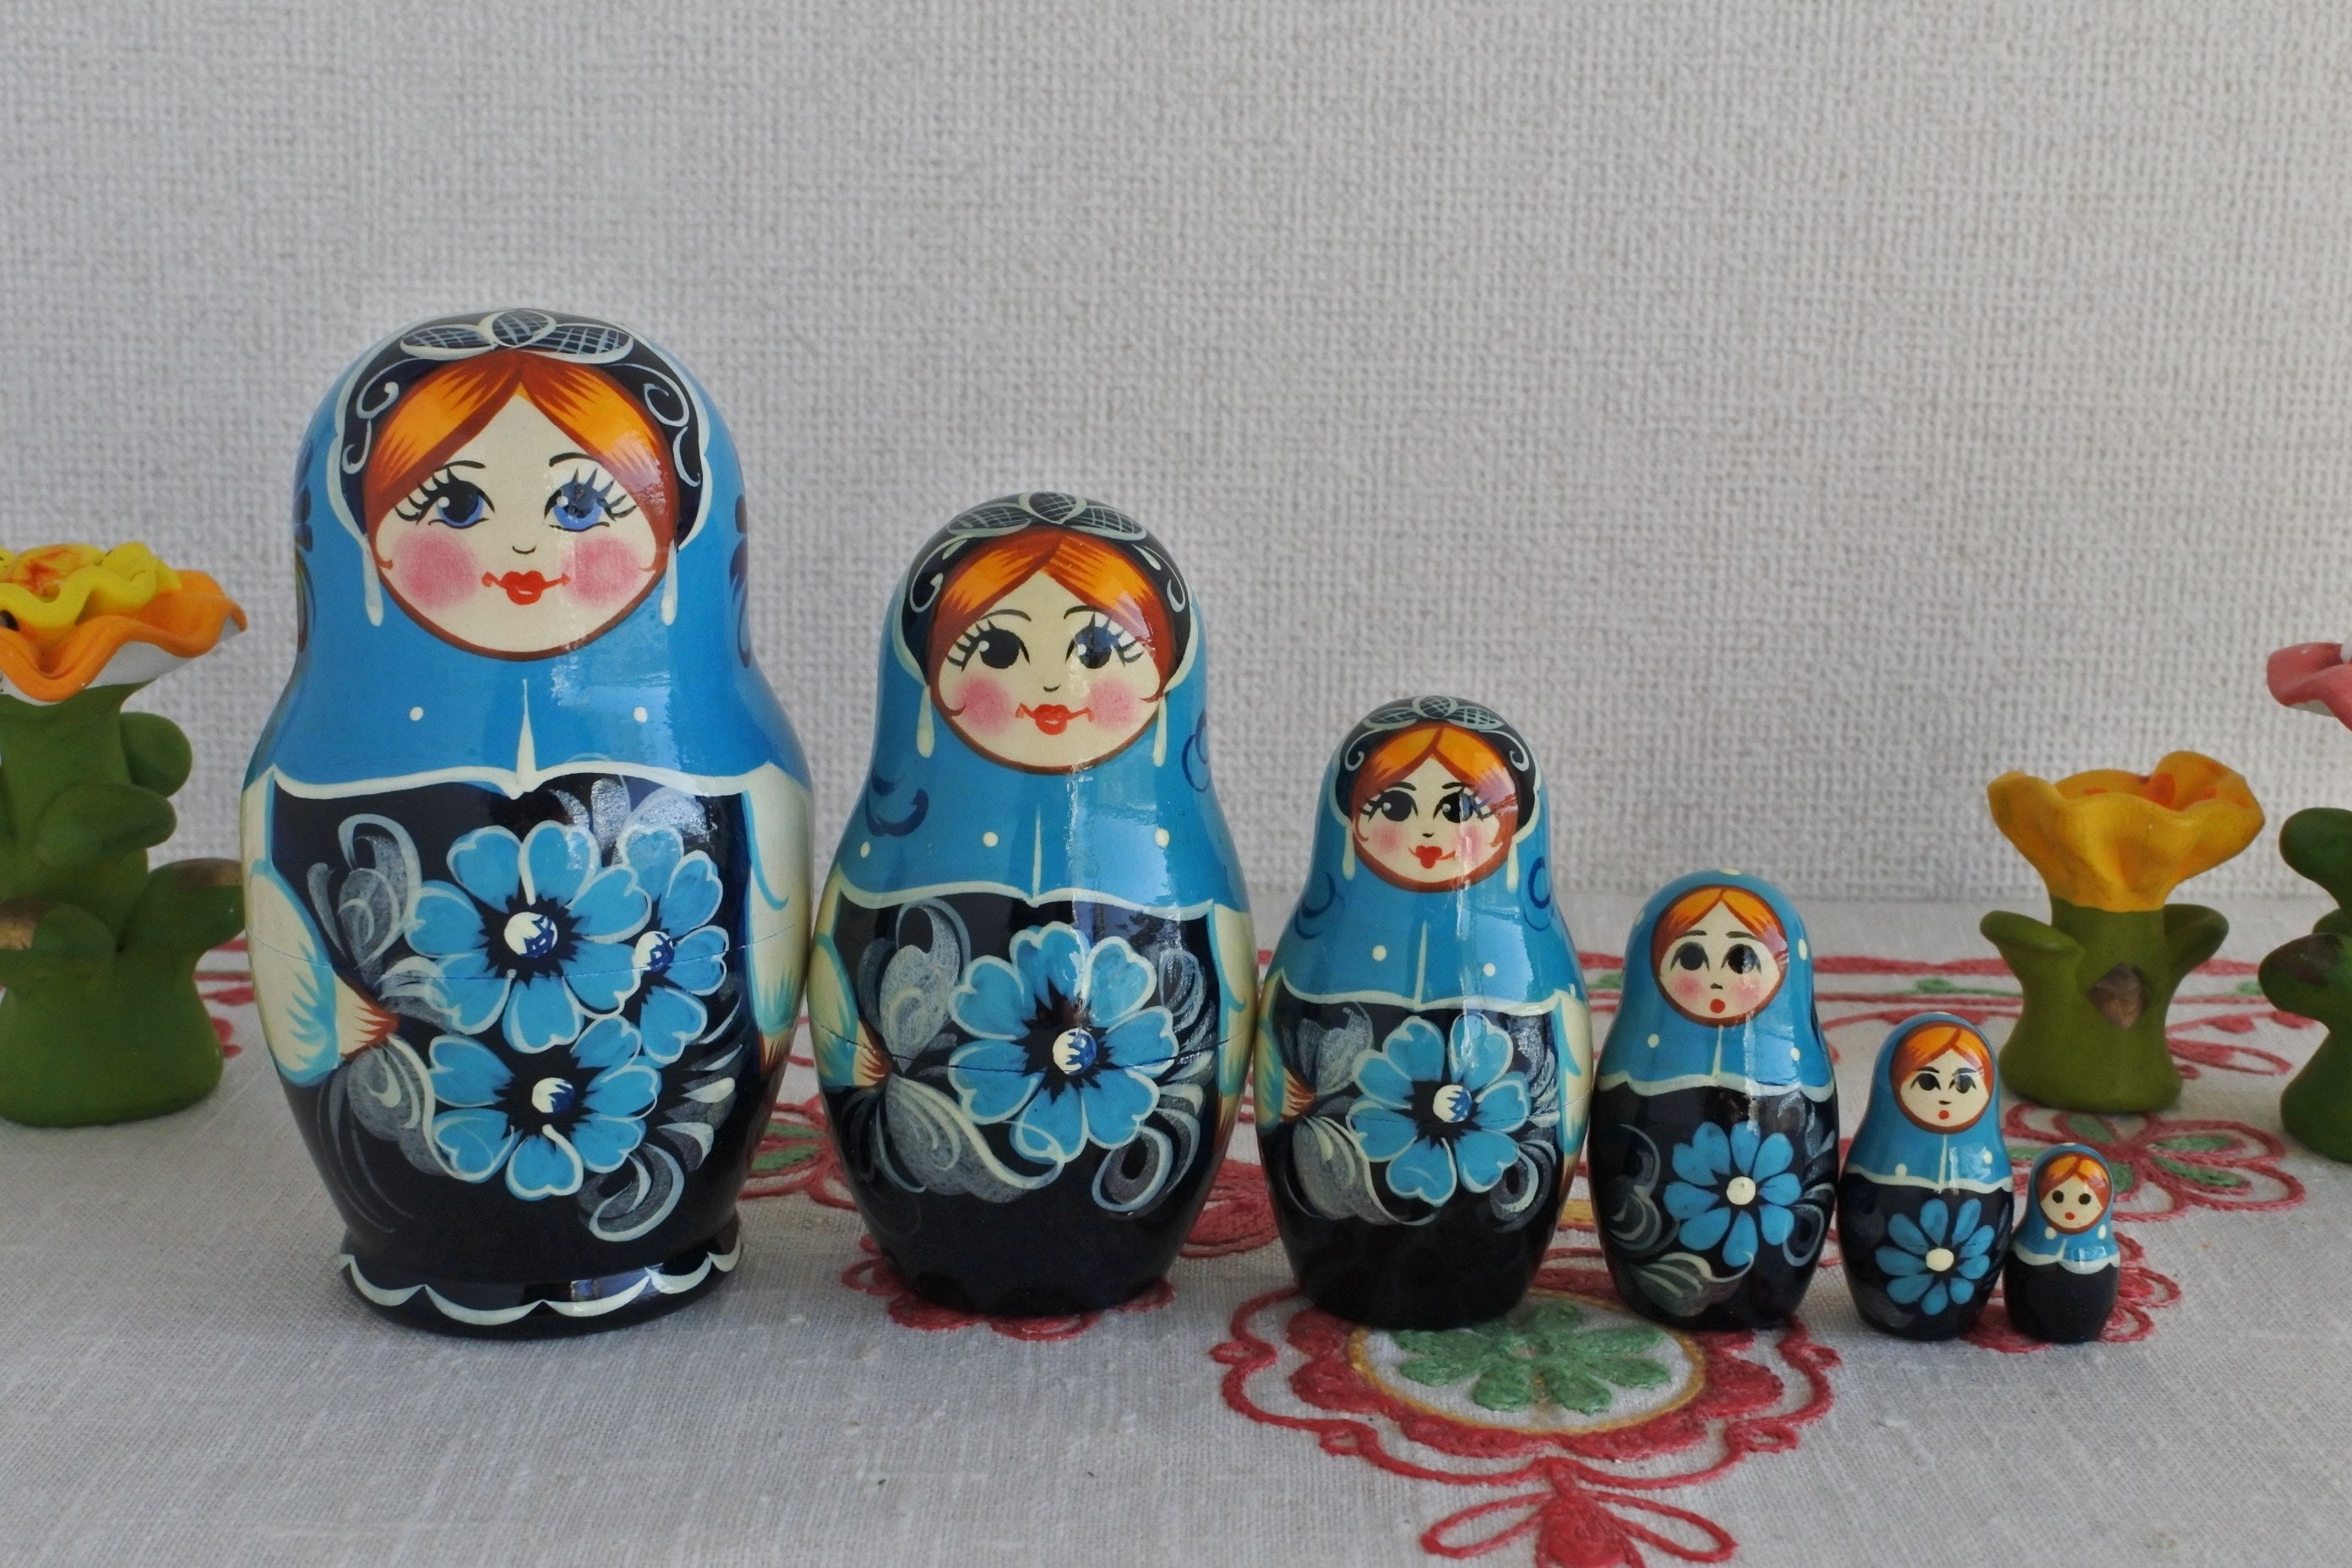 ロシア雑貨いりえのほとり マトリョーシカ 木の人形 6ピース 青 ロシア 